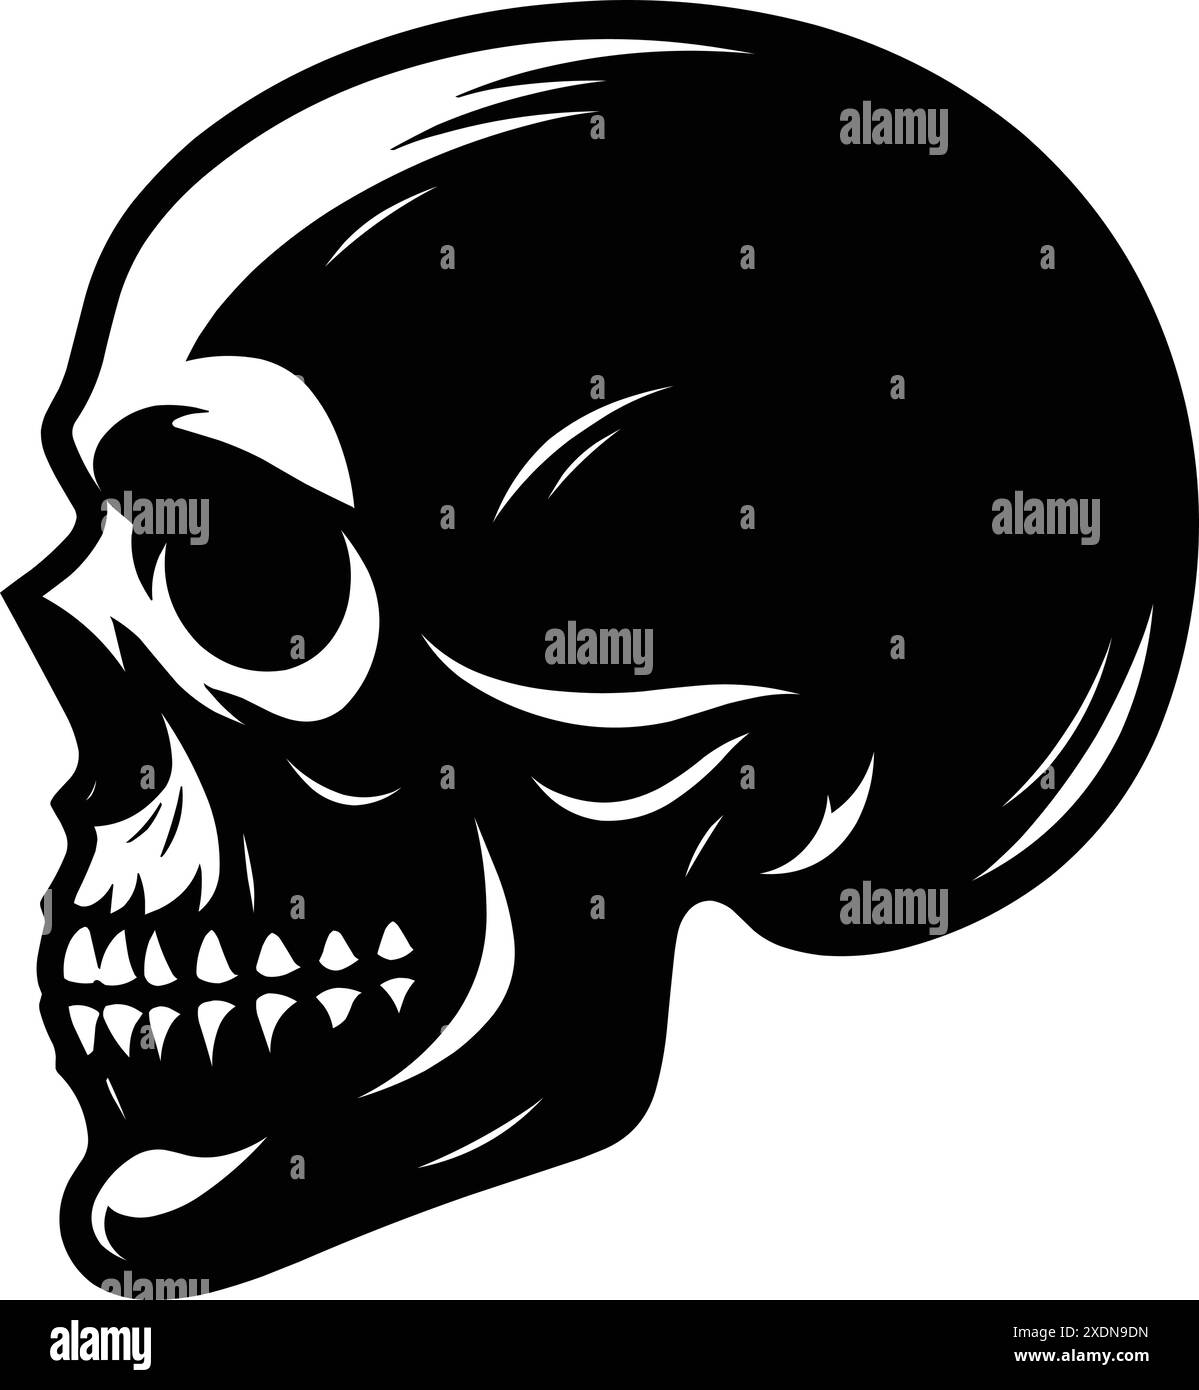 Schwarz-weiße menschliche Schädel Silhouette Vektor Illustration isoliert auf weißem Hintergrund Stock Vektor